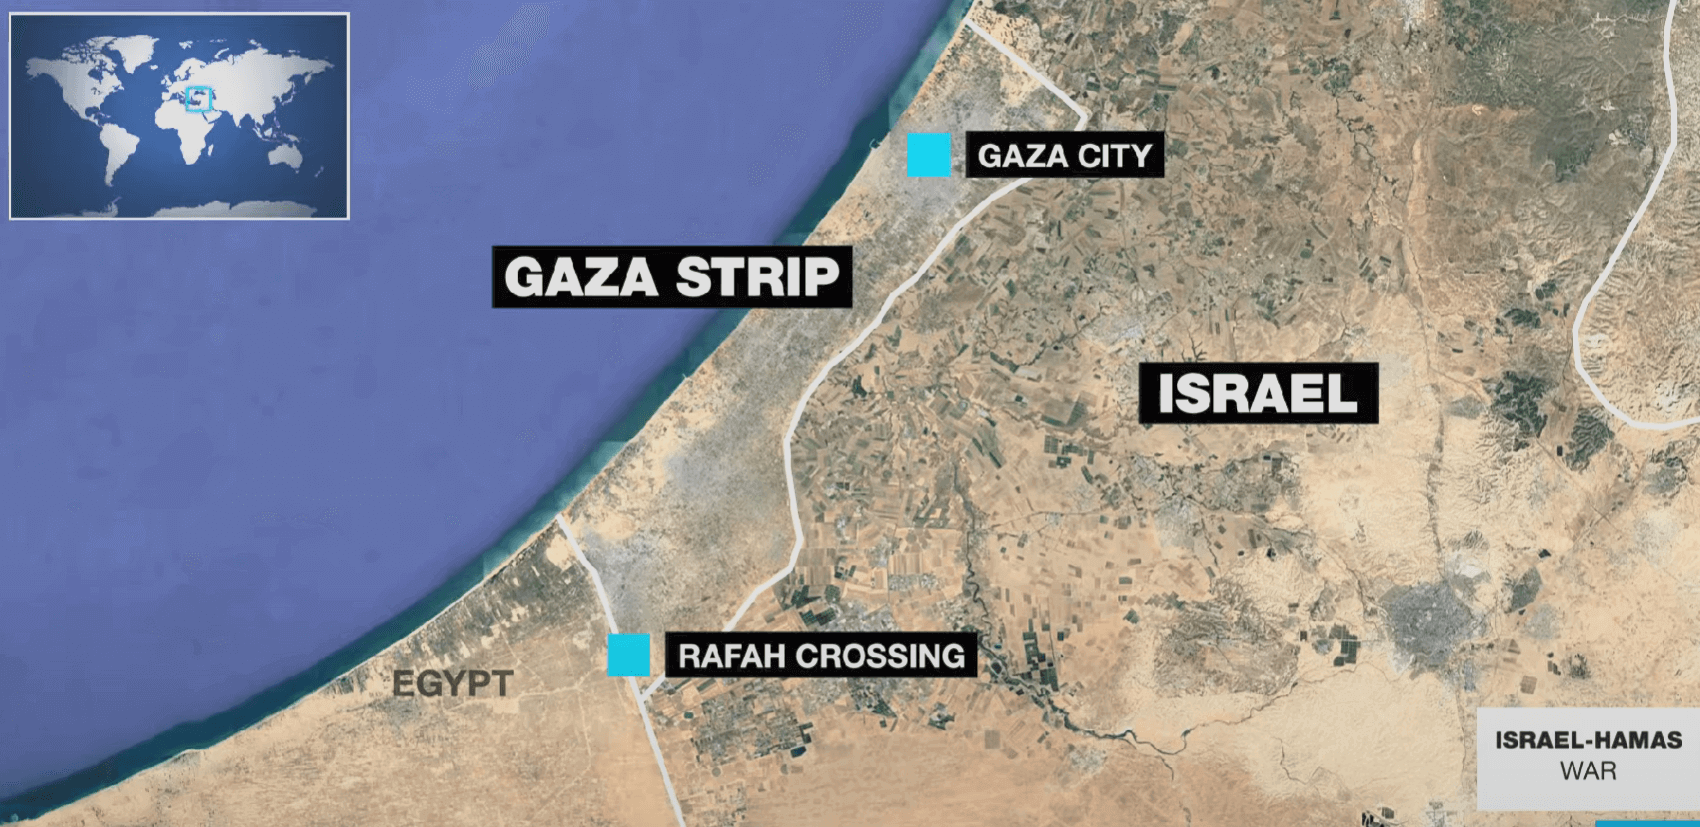 Mesir Perkuat Perbatasan Gaza dengan Menutup Penyeberangan Rafah di Timur Tengah dan Pembatas Beton